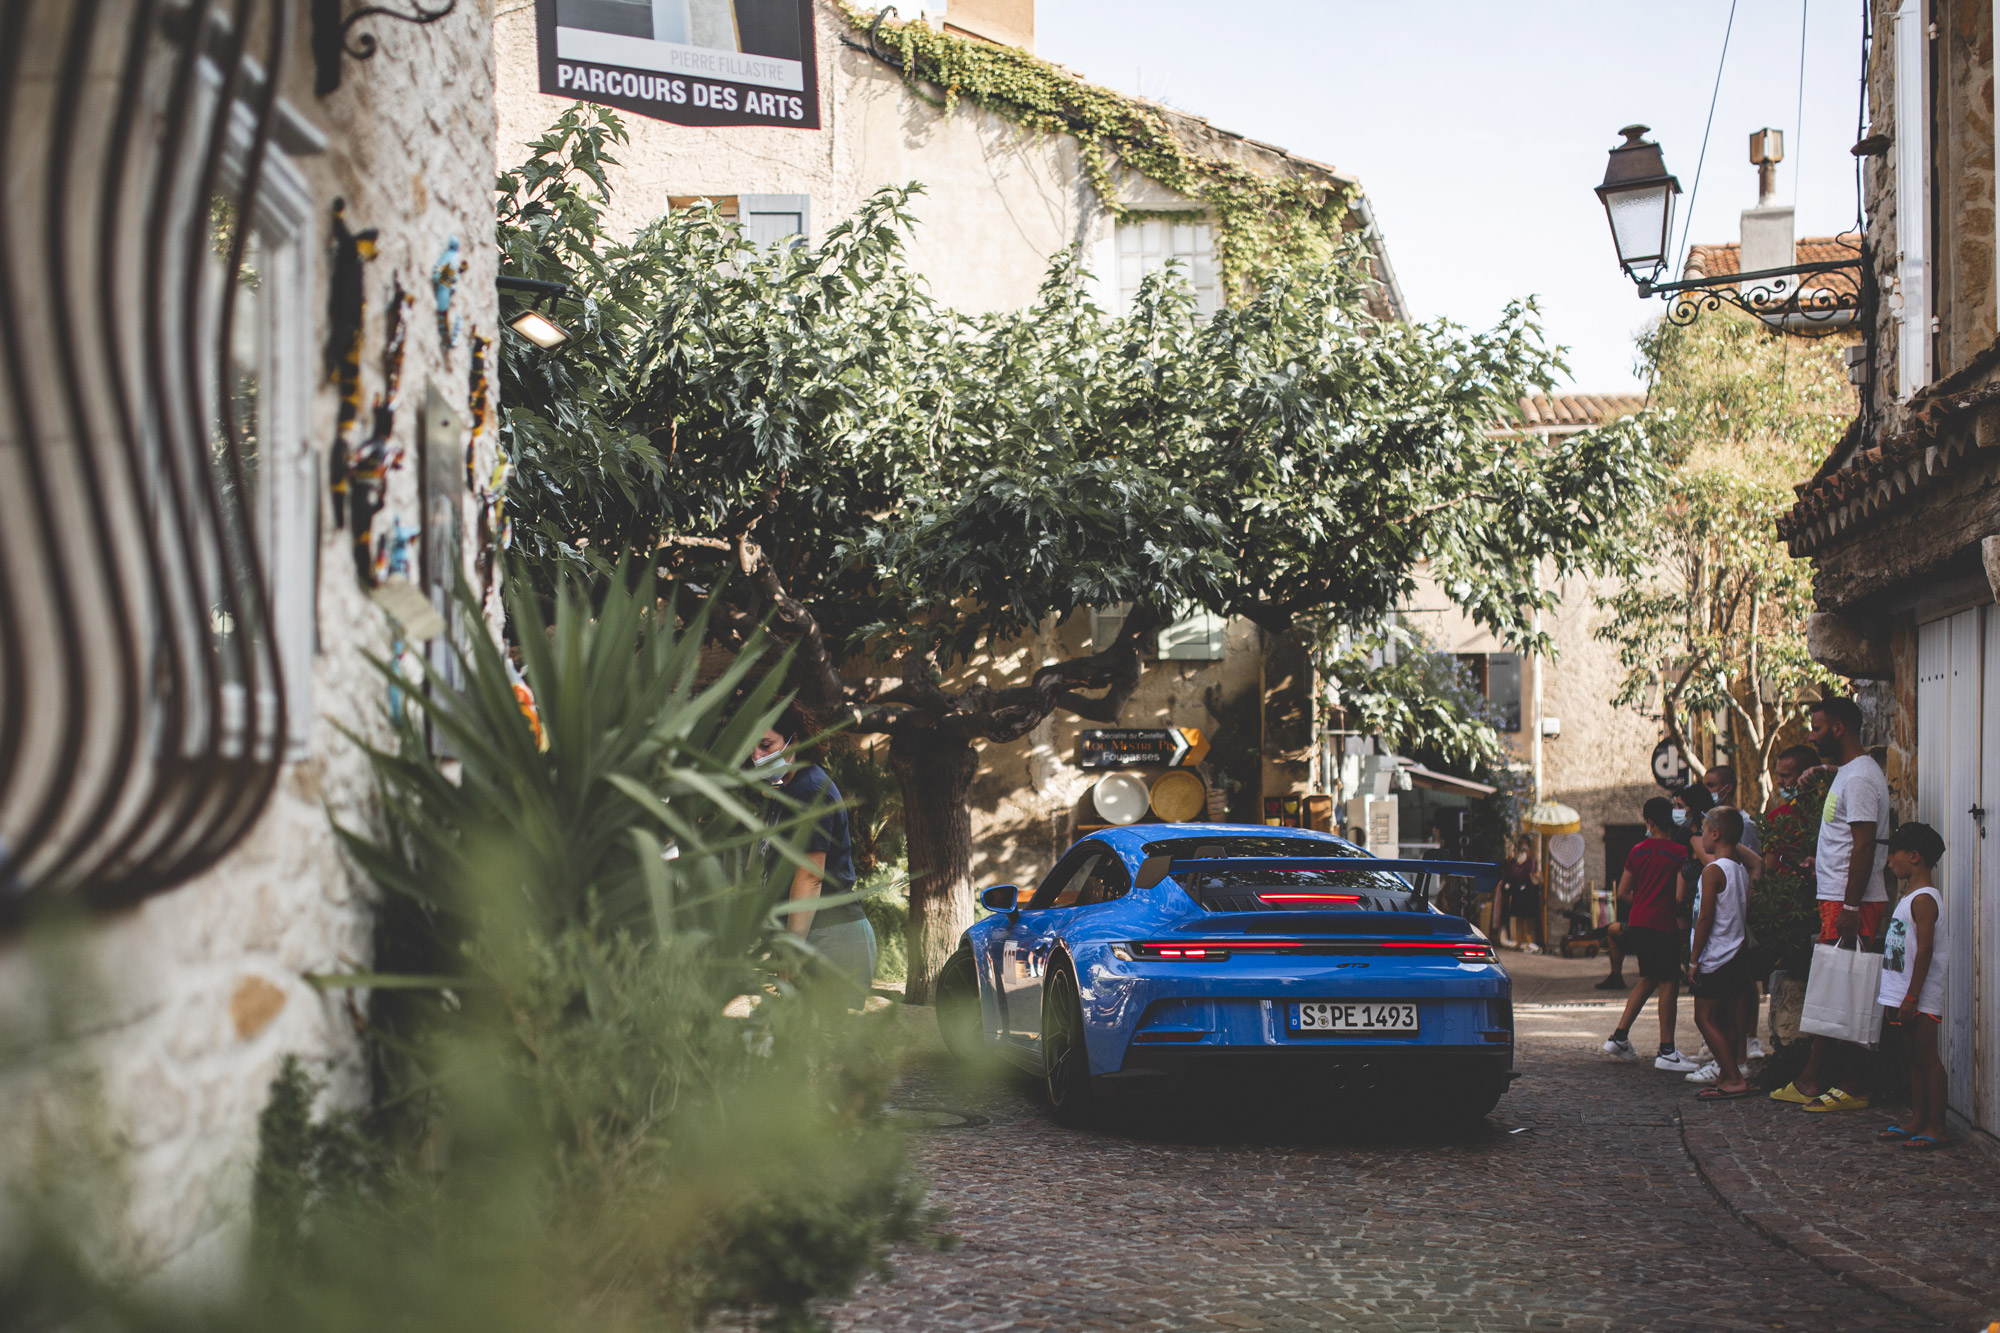 Blue Porsche 911 GT3 drives through a winding Provençal lane